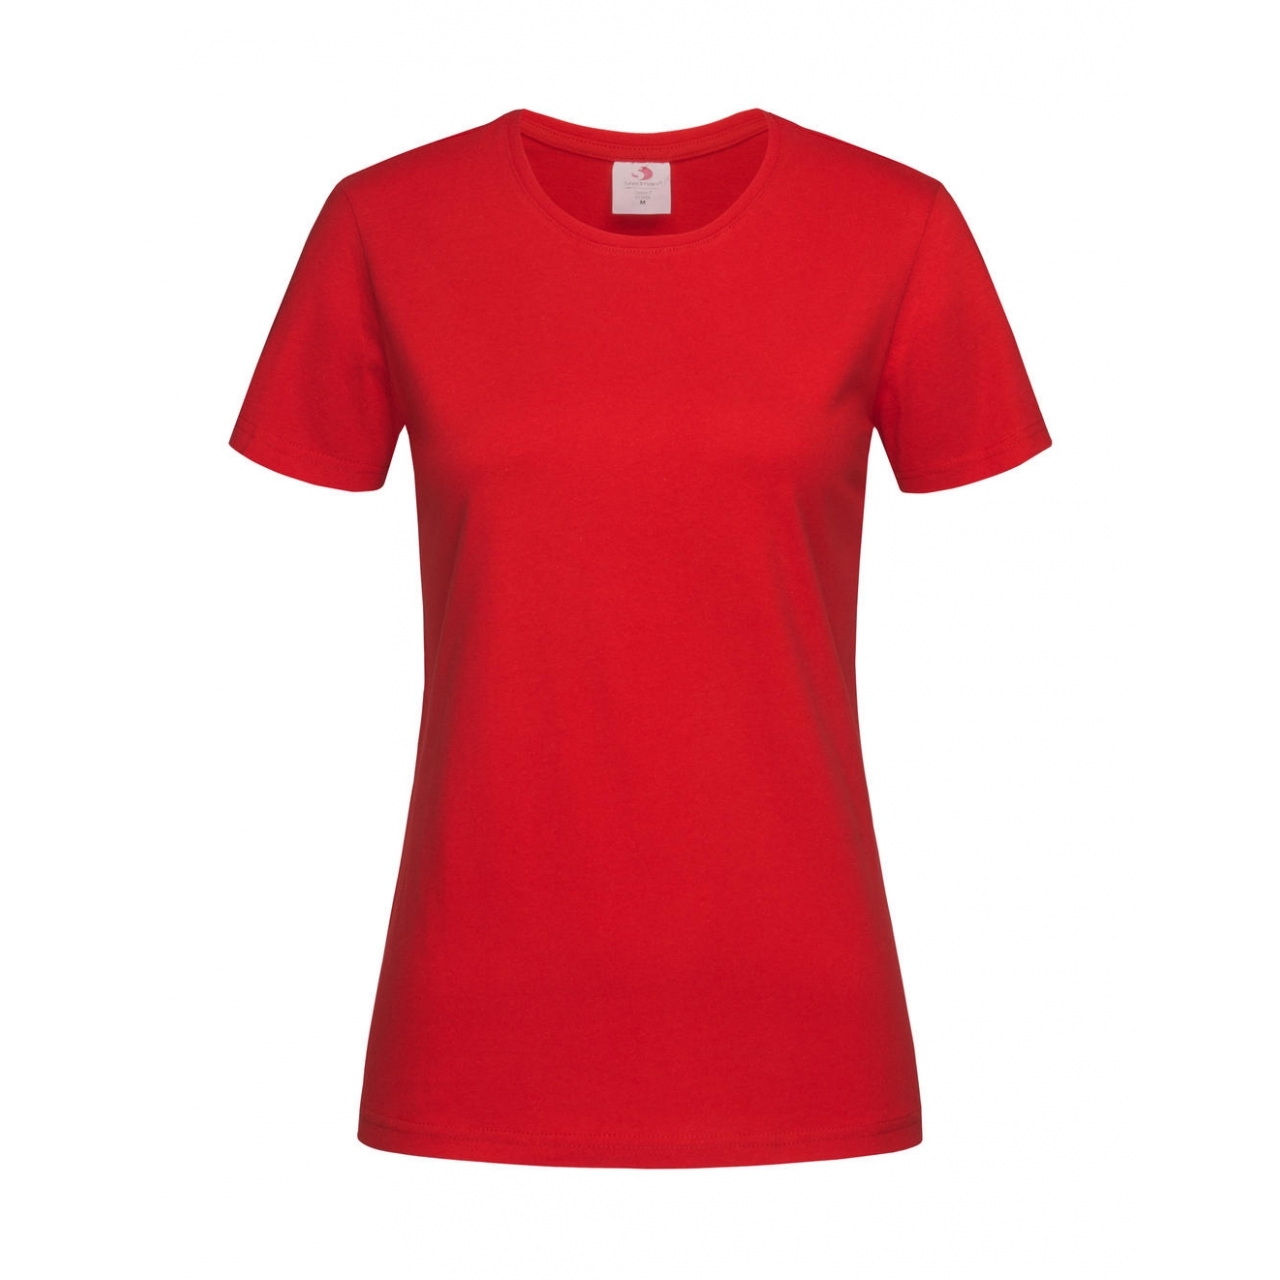 Tričko dámské Stedman Fitted s kulatým výstřihem - červené, S